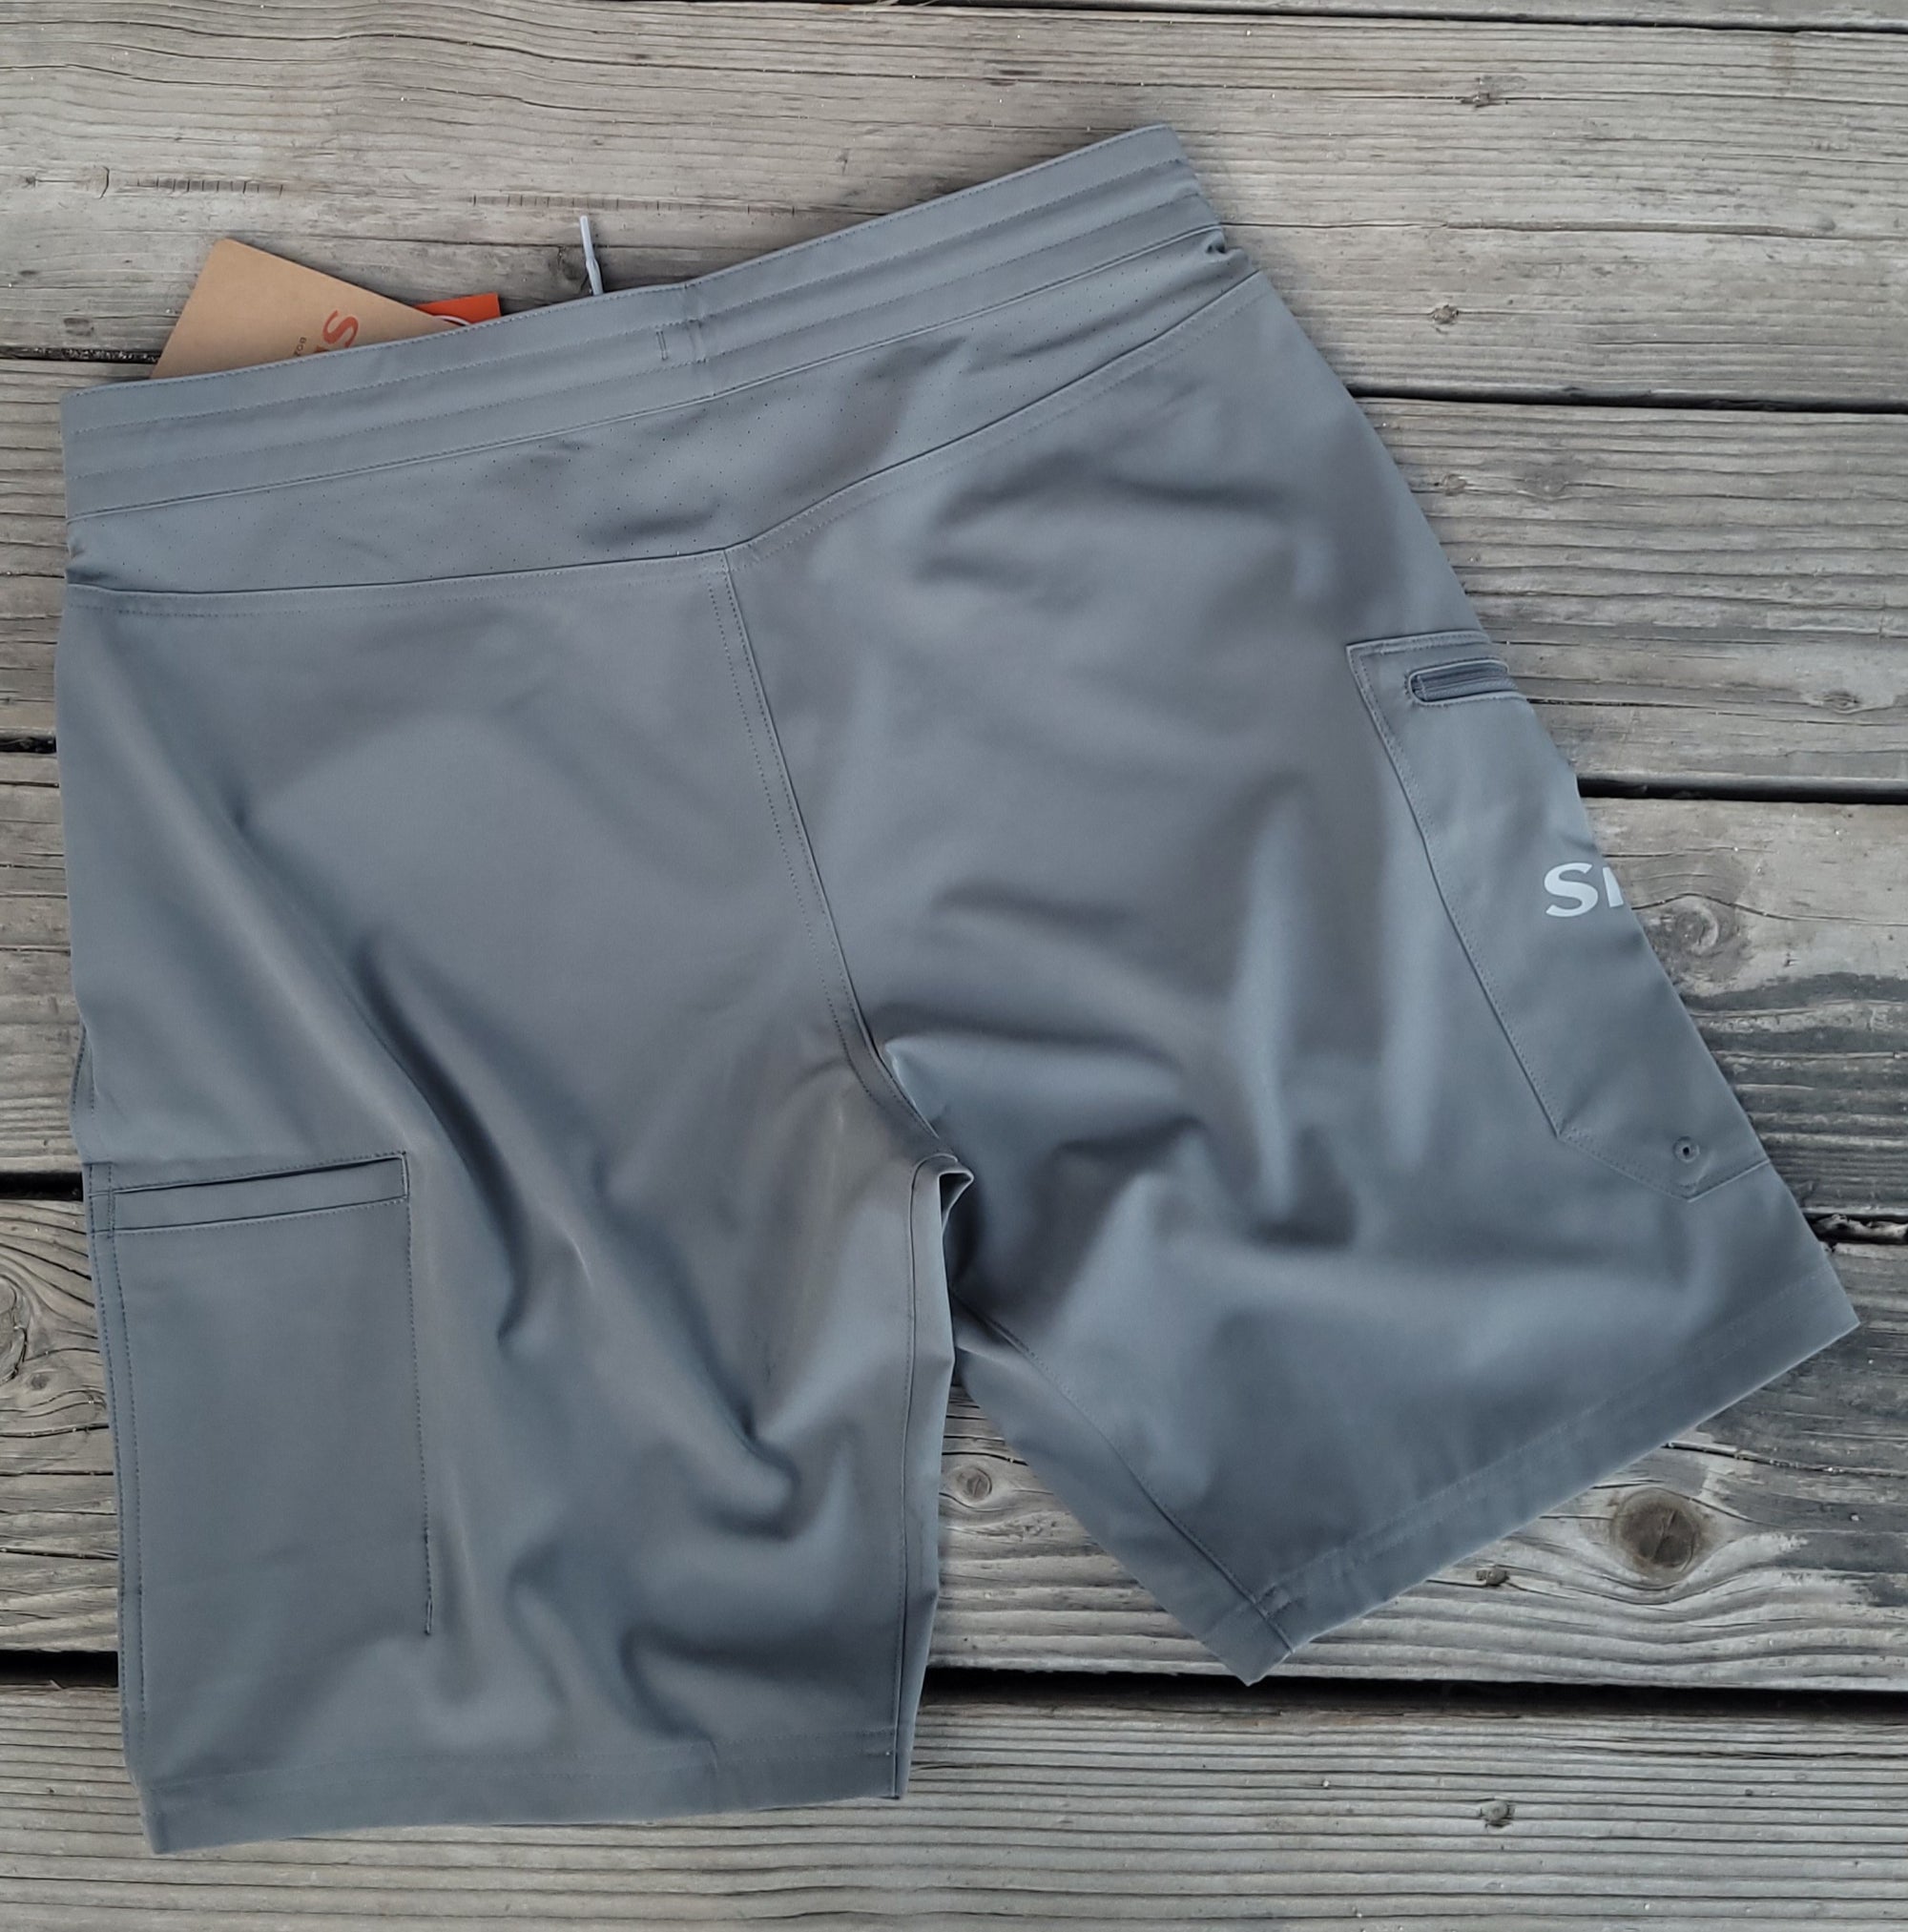 Simms - Seamount Men's Board Shorts - Steel